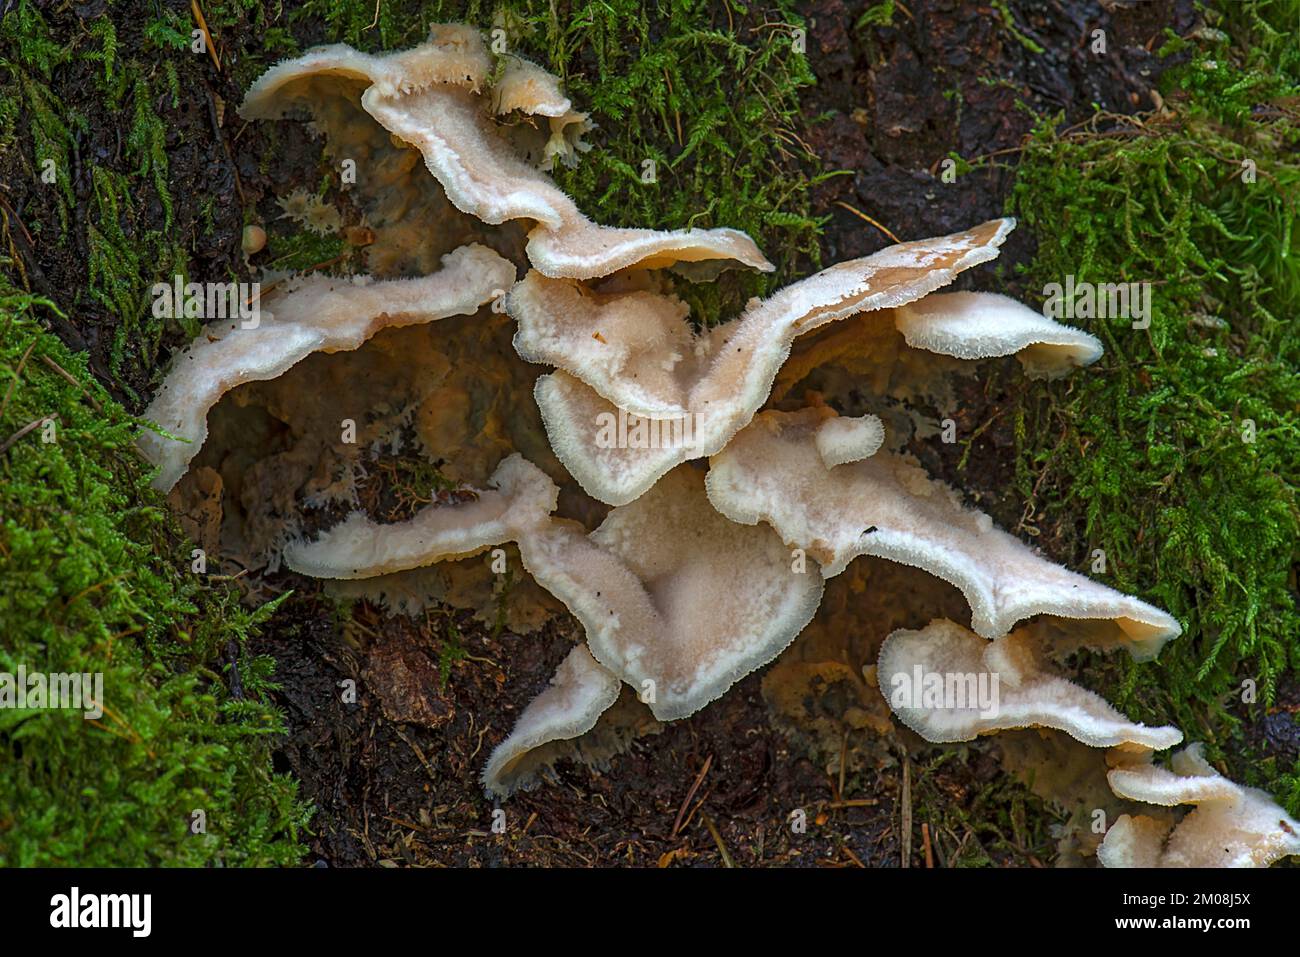 Gelee-fleischige Pleco (Merulius tremellosus) in Mischwäldern, Bayern, Deutschland, Europa Stockfoto